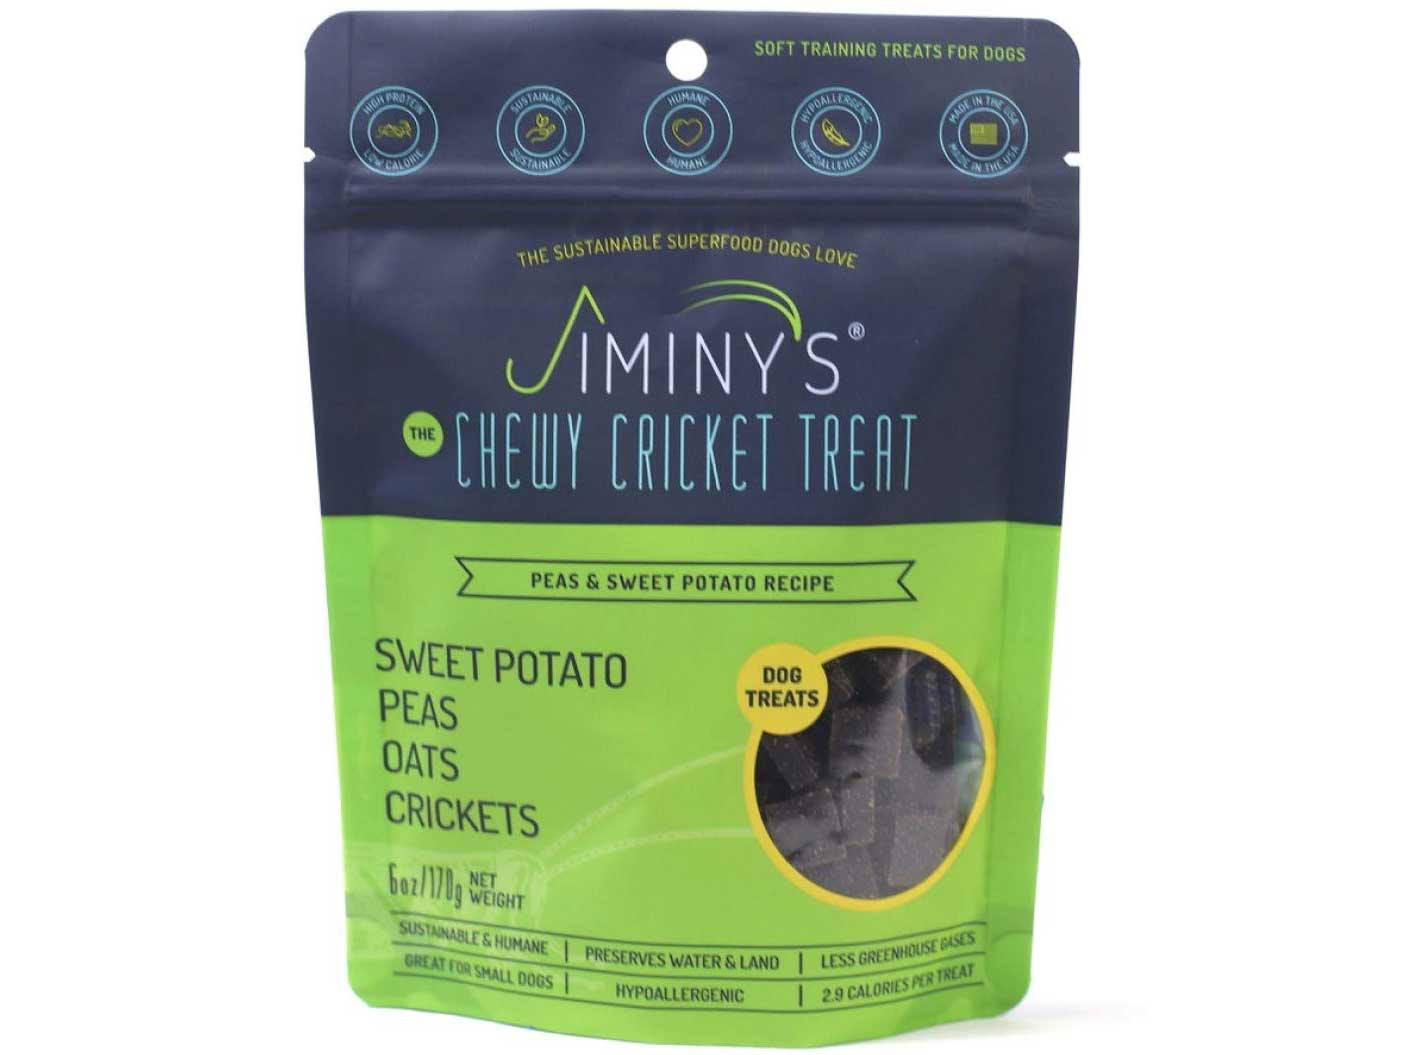 Jiminy’s Original Cricket Dog Treats